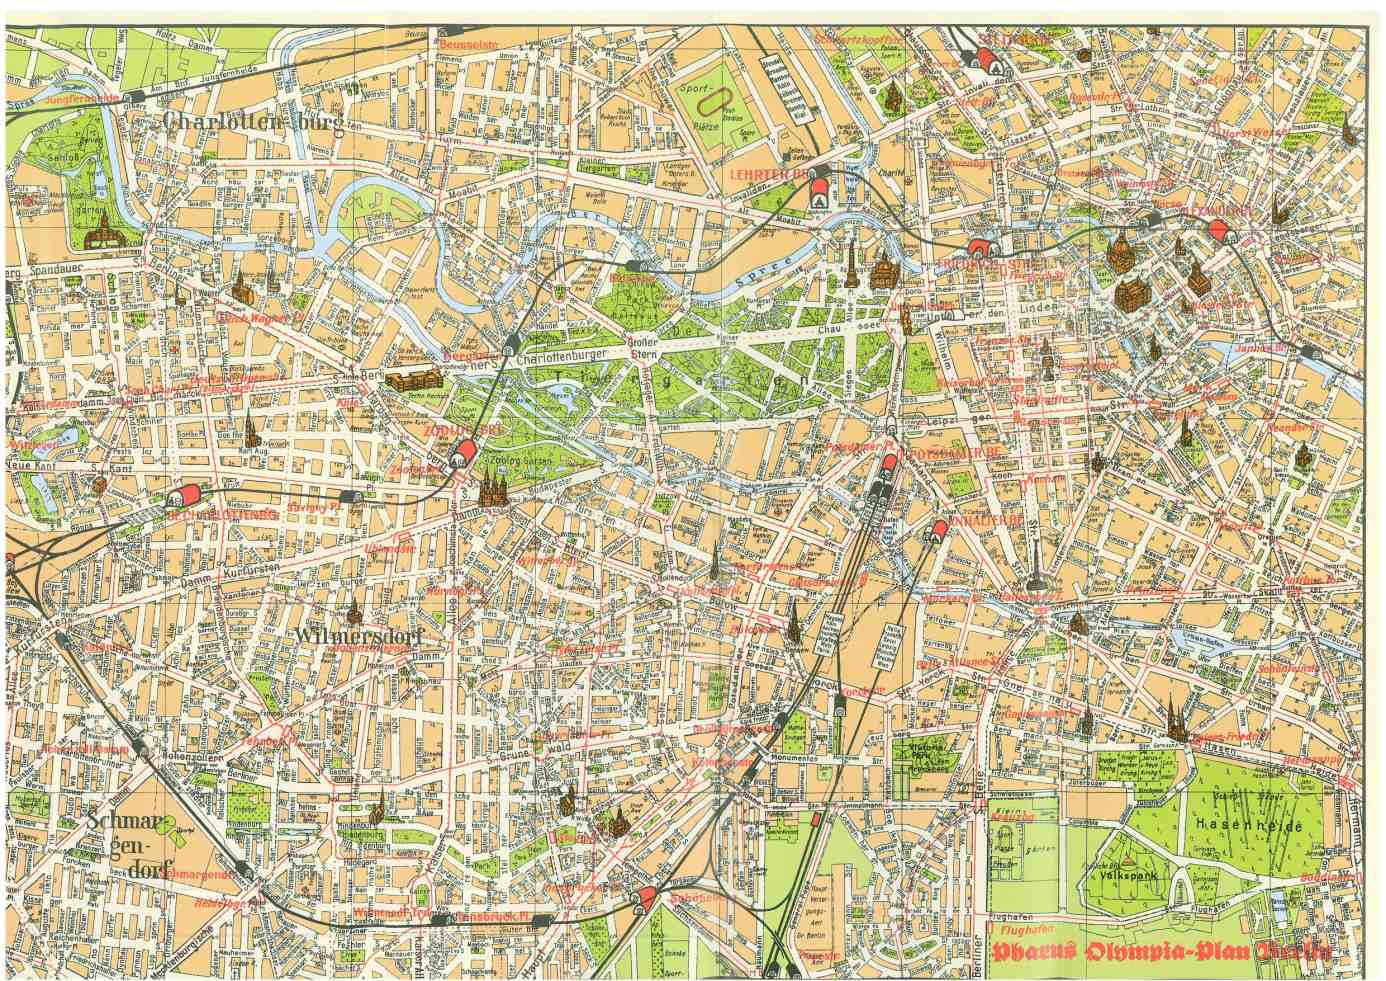 Map of Berlin 1936